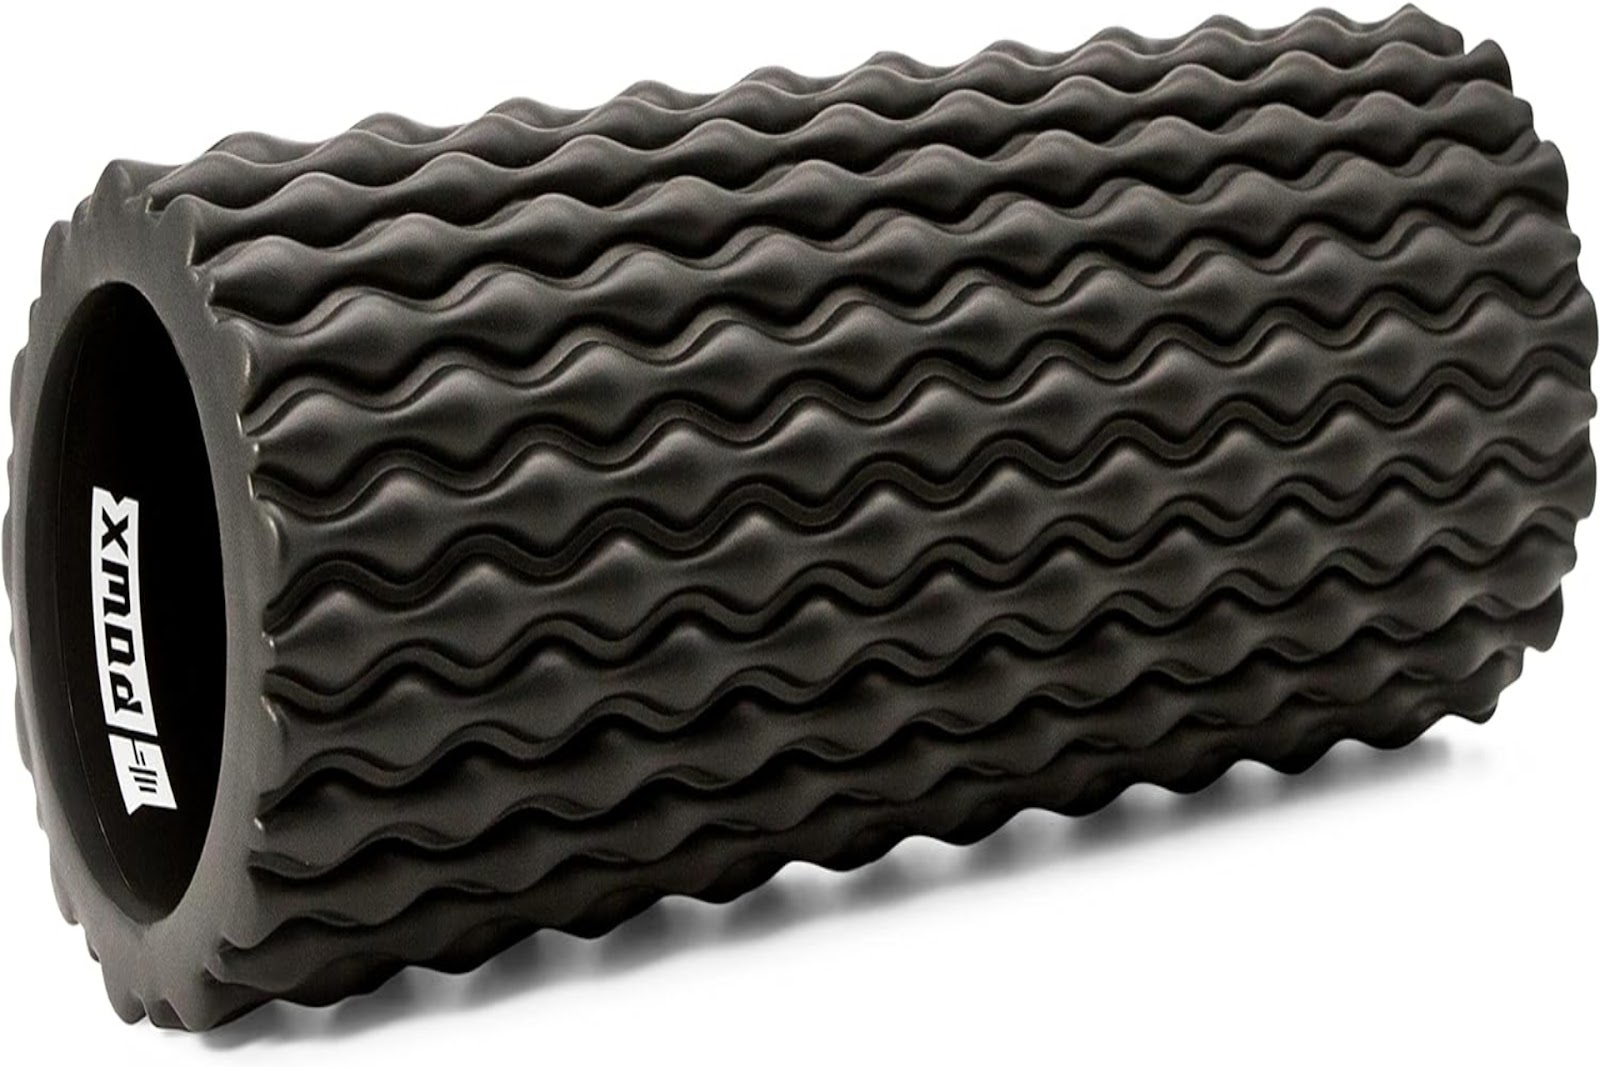 a black foam roller